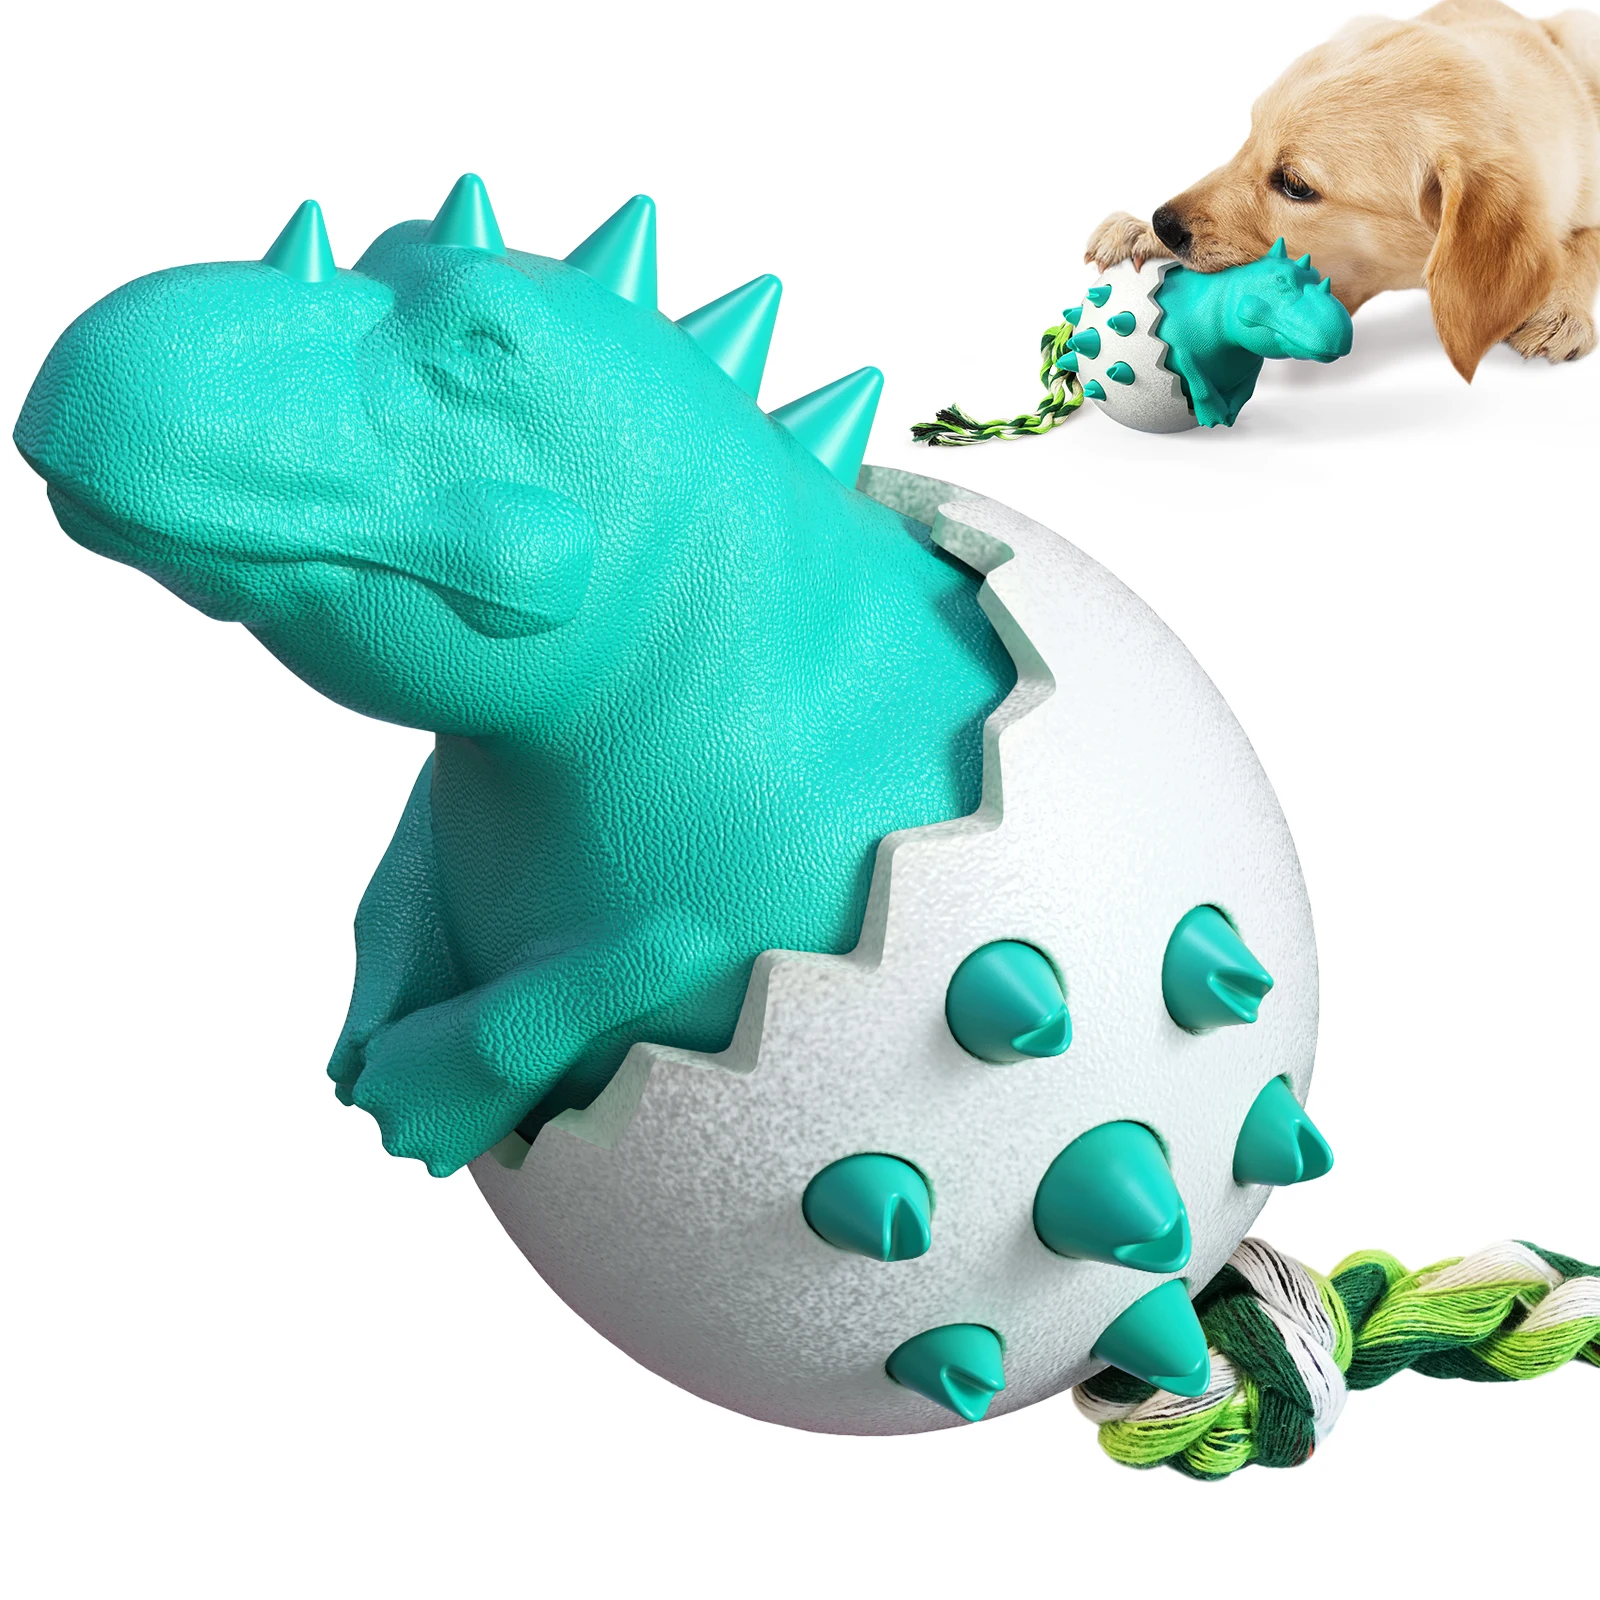 

New product dinosaur egg dog molar toy dog manufacturer wholesale, Lake blue, orange, yellow, green, chocolate